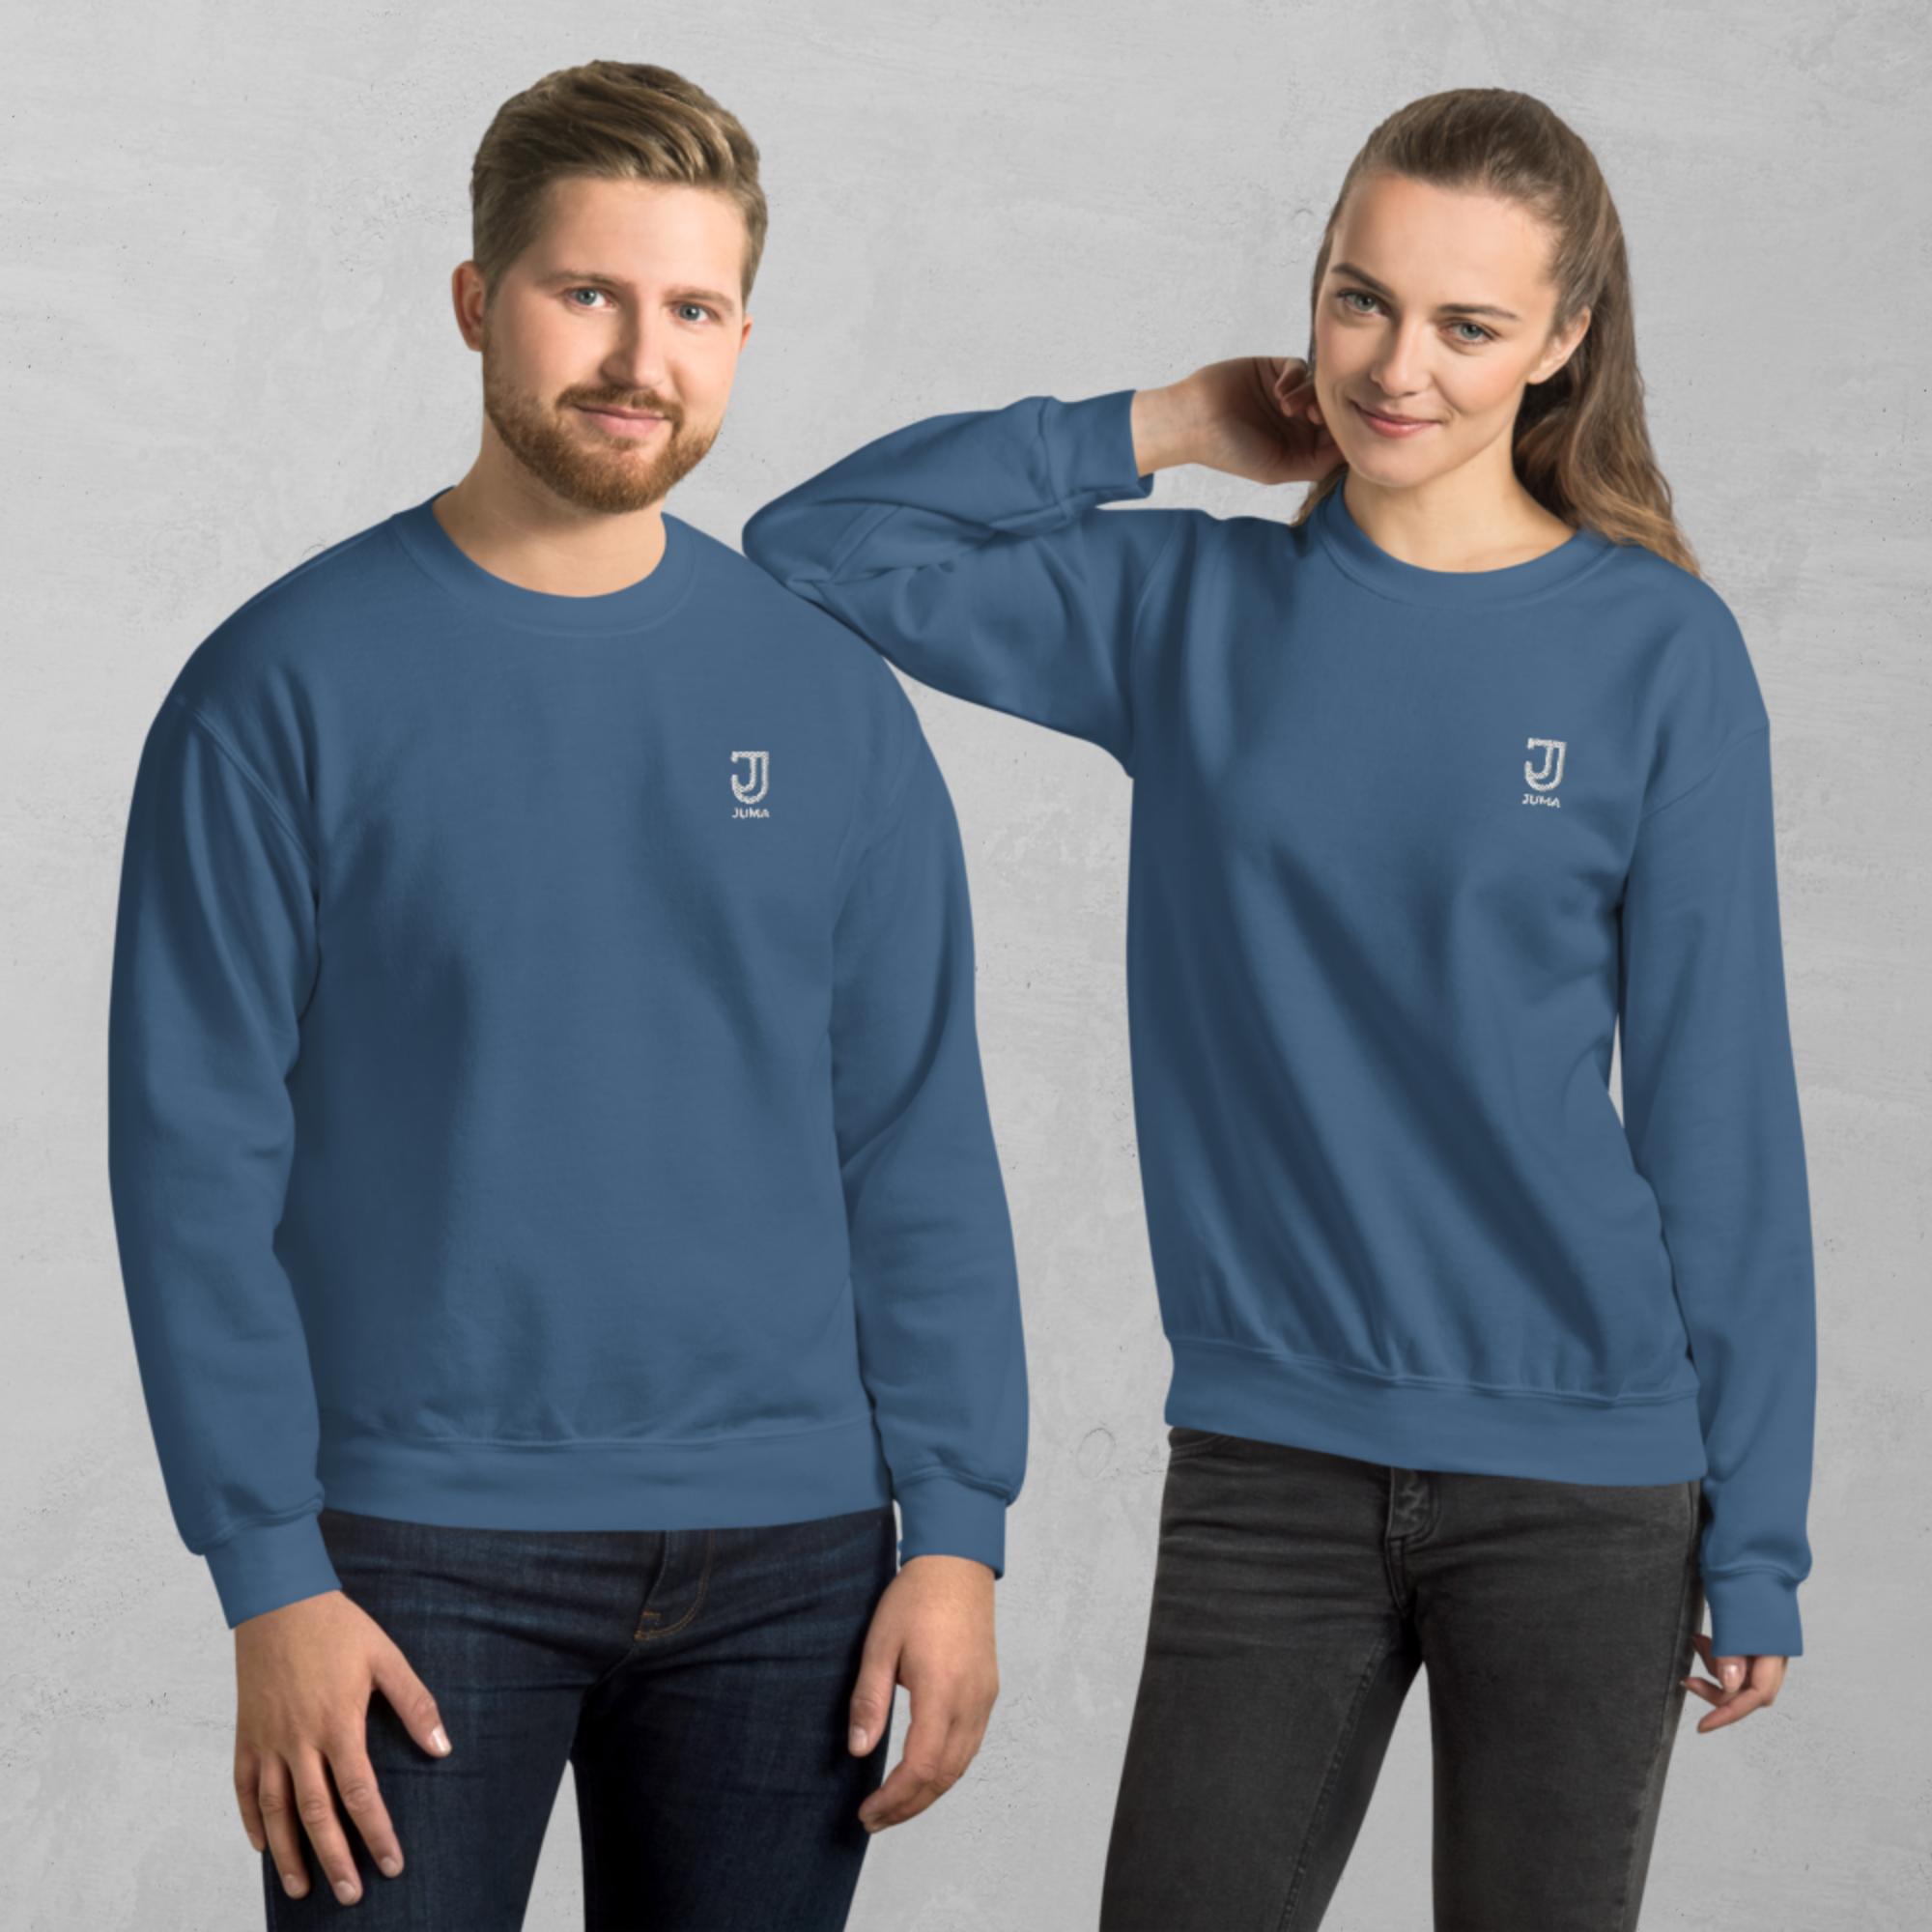 unisex-crew-neck-sweatshirt-indigo-blue-front-63884a4978b67.jpg